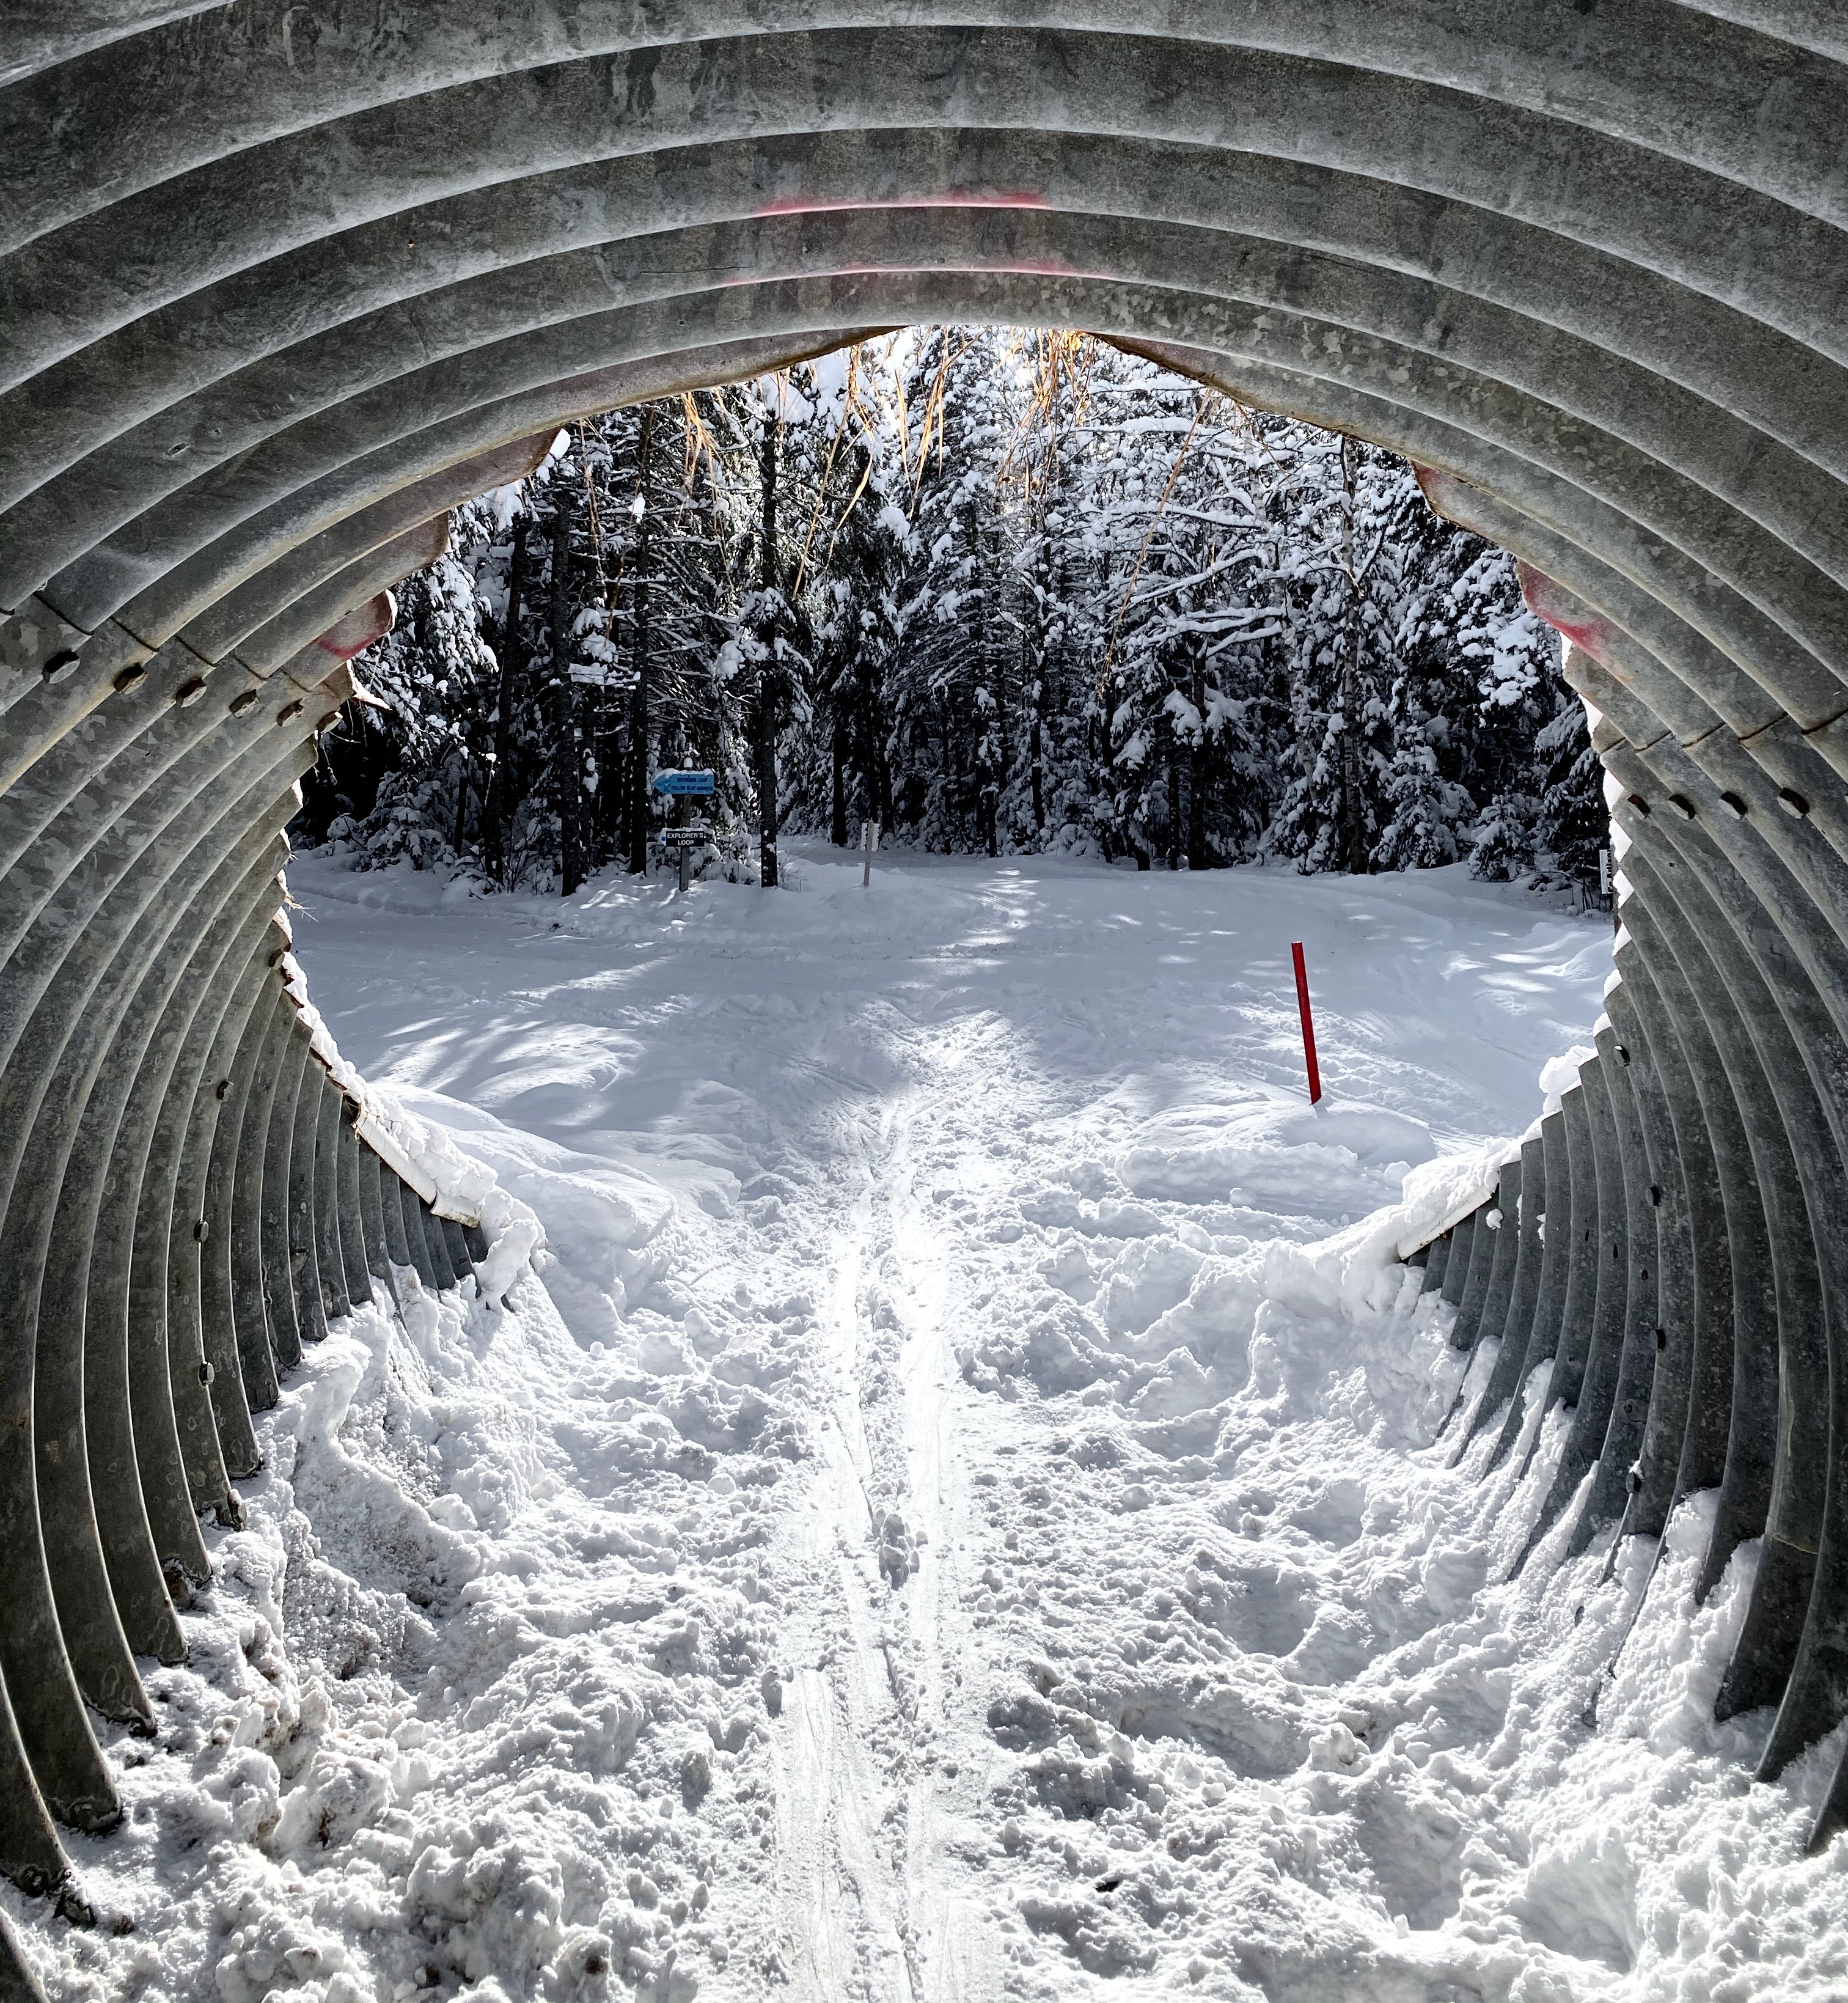 Tunnel to ski through on cross-country ski trail.